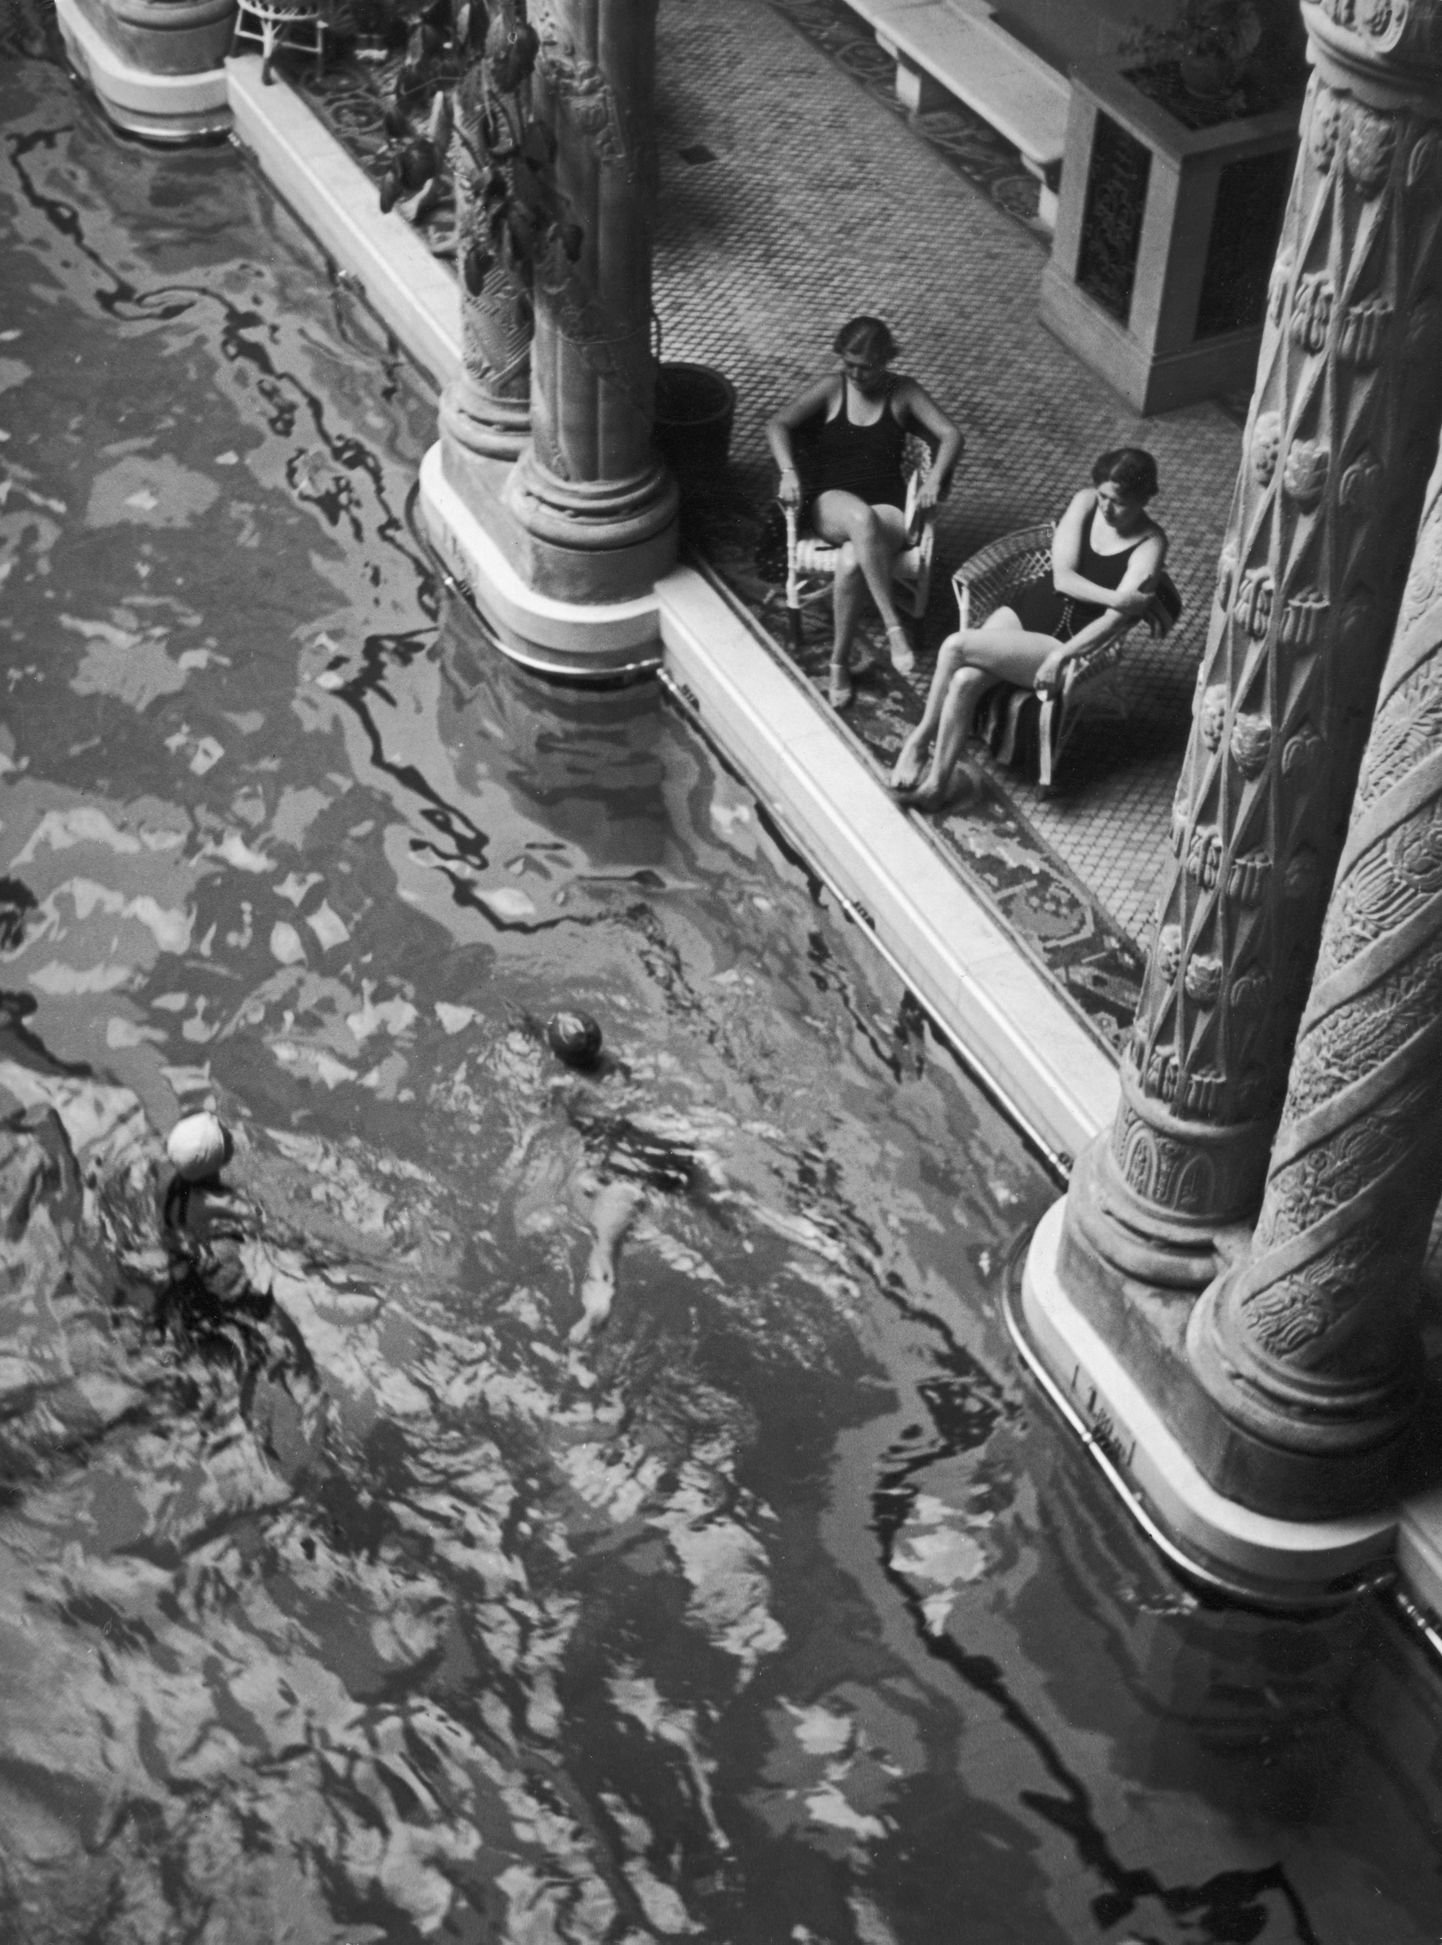 Luksuslik bassein Budapestis. Foto on tehtud 1930ndatel.